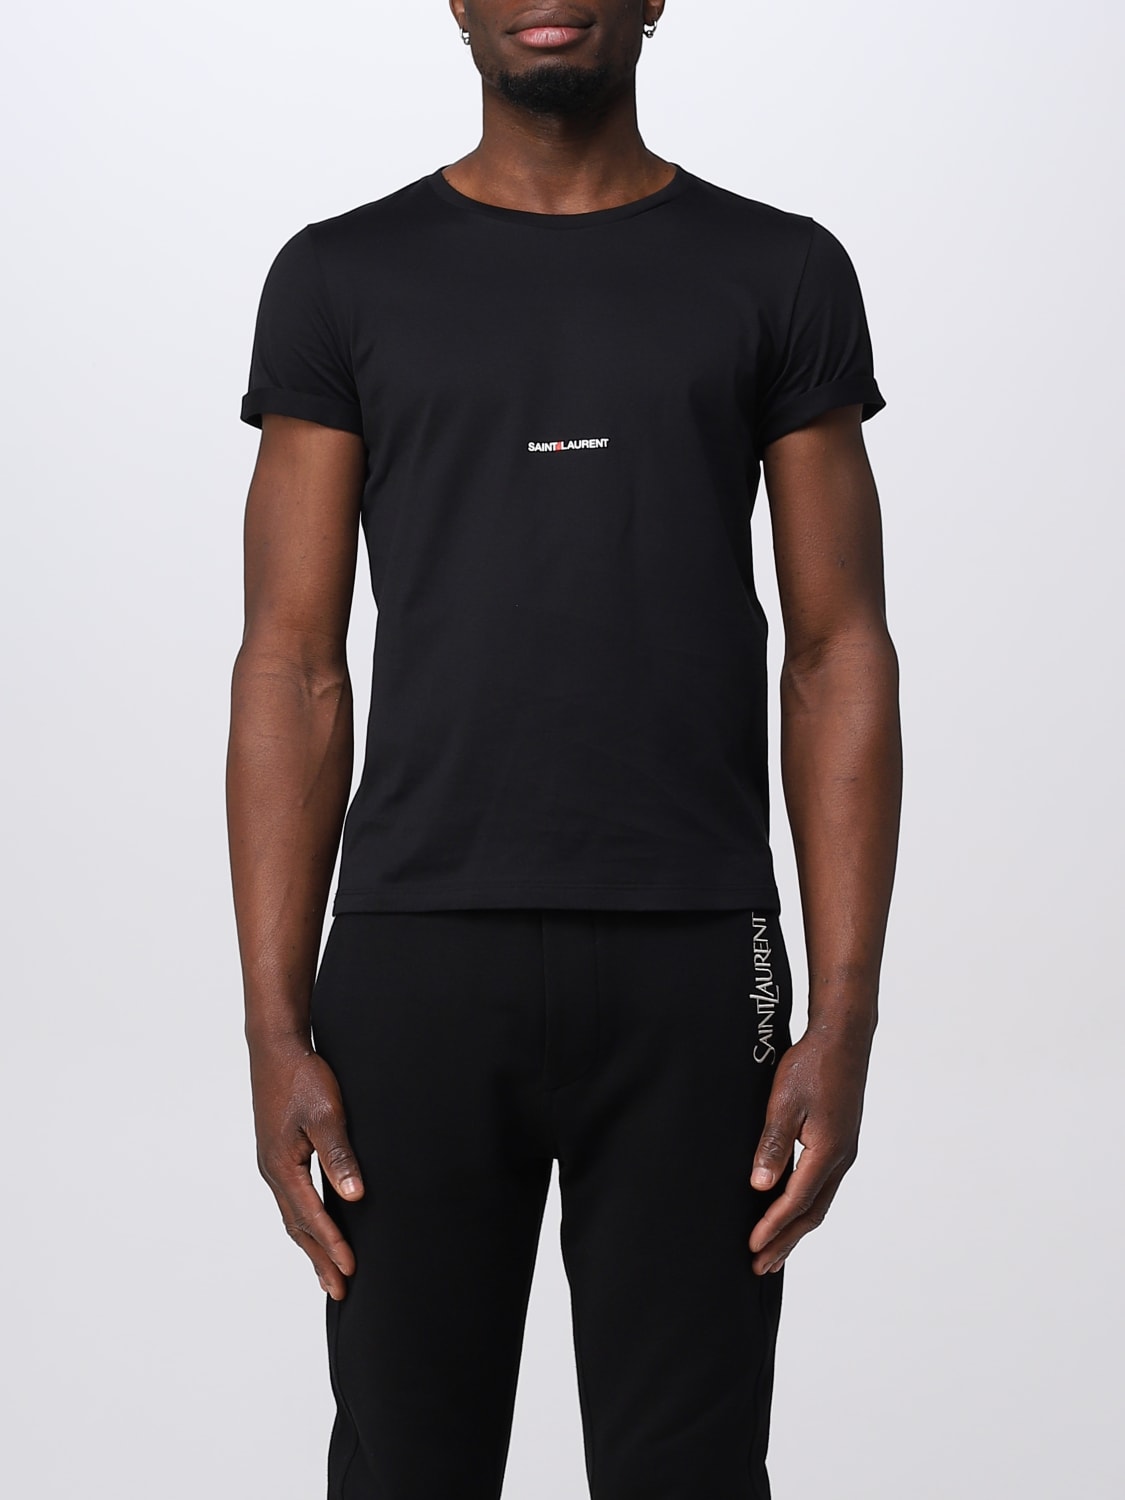 SAINT LAURENT: cotton t-shirt - Black | Saint Laurent t-shirt ...